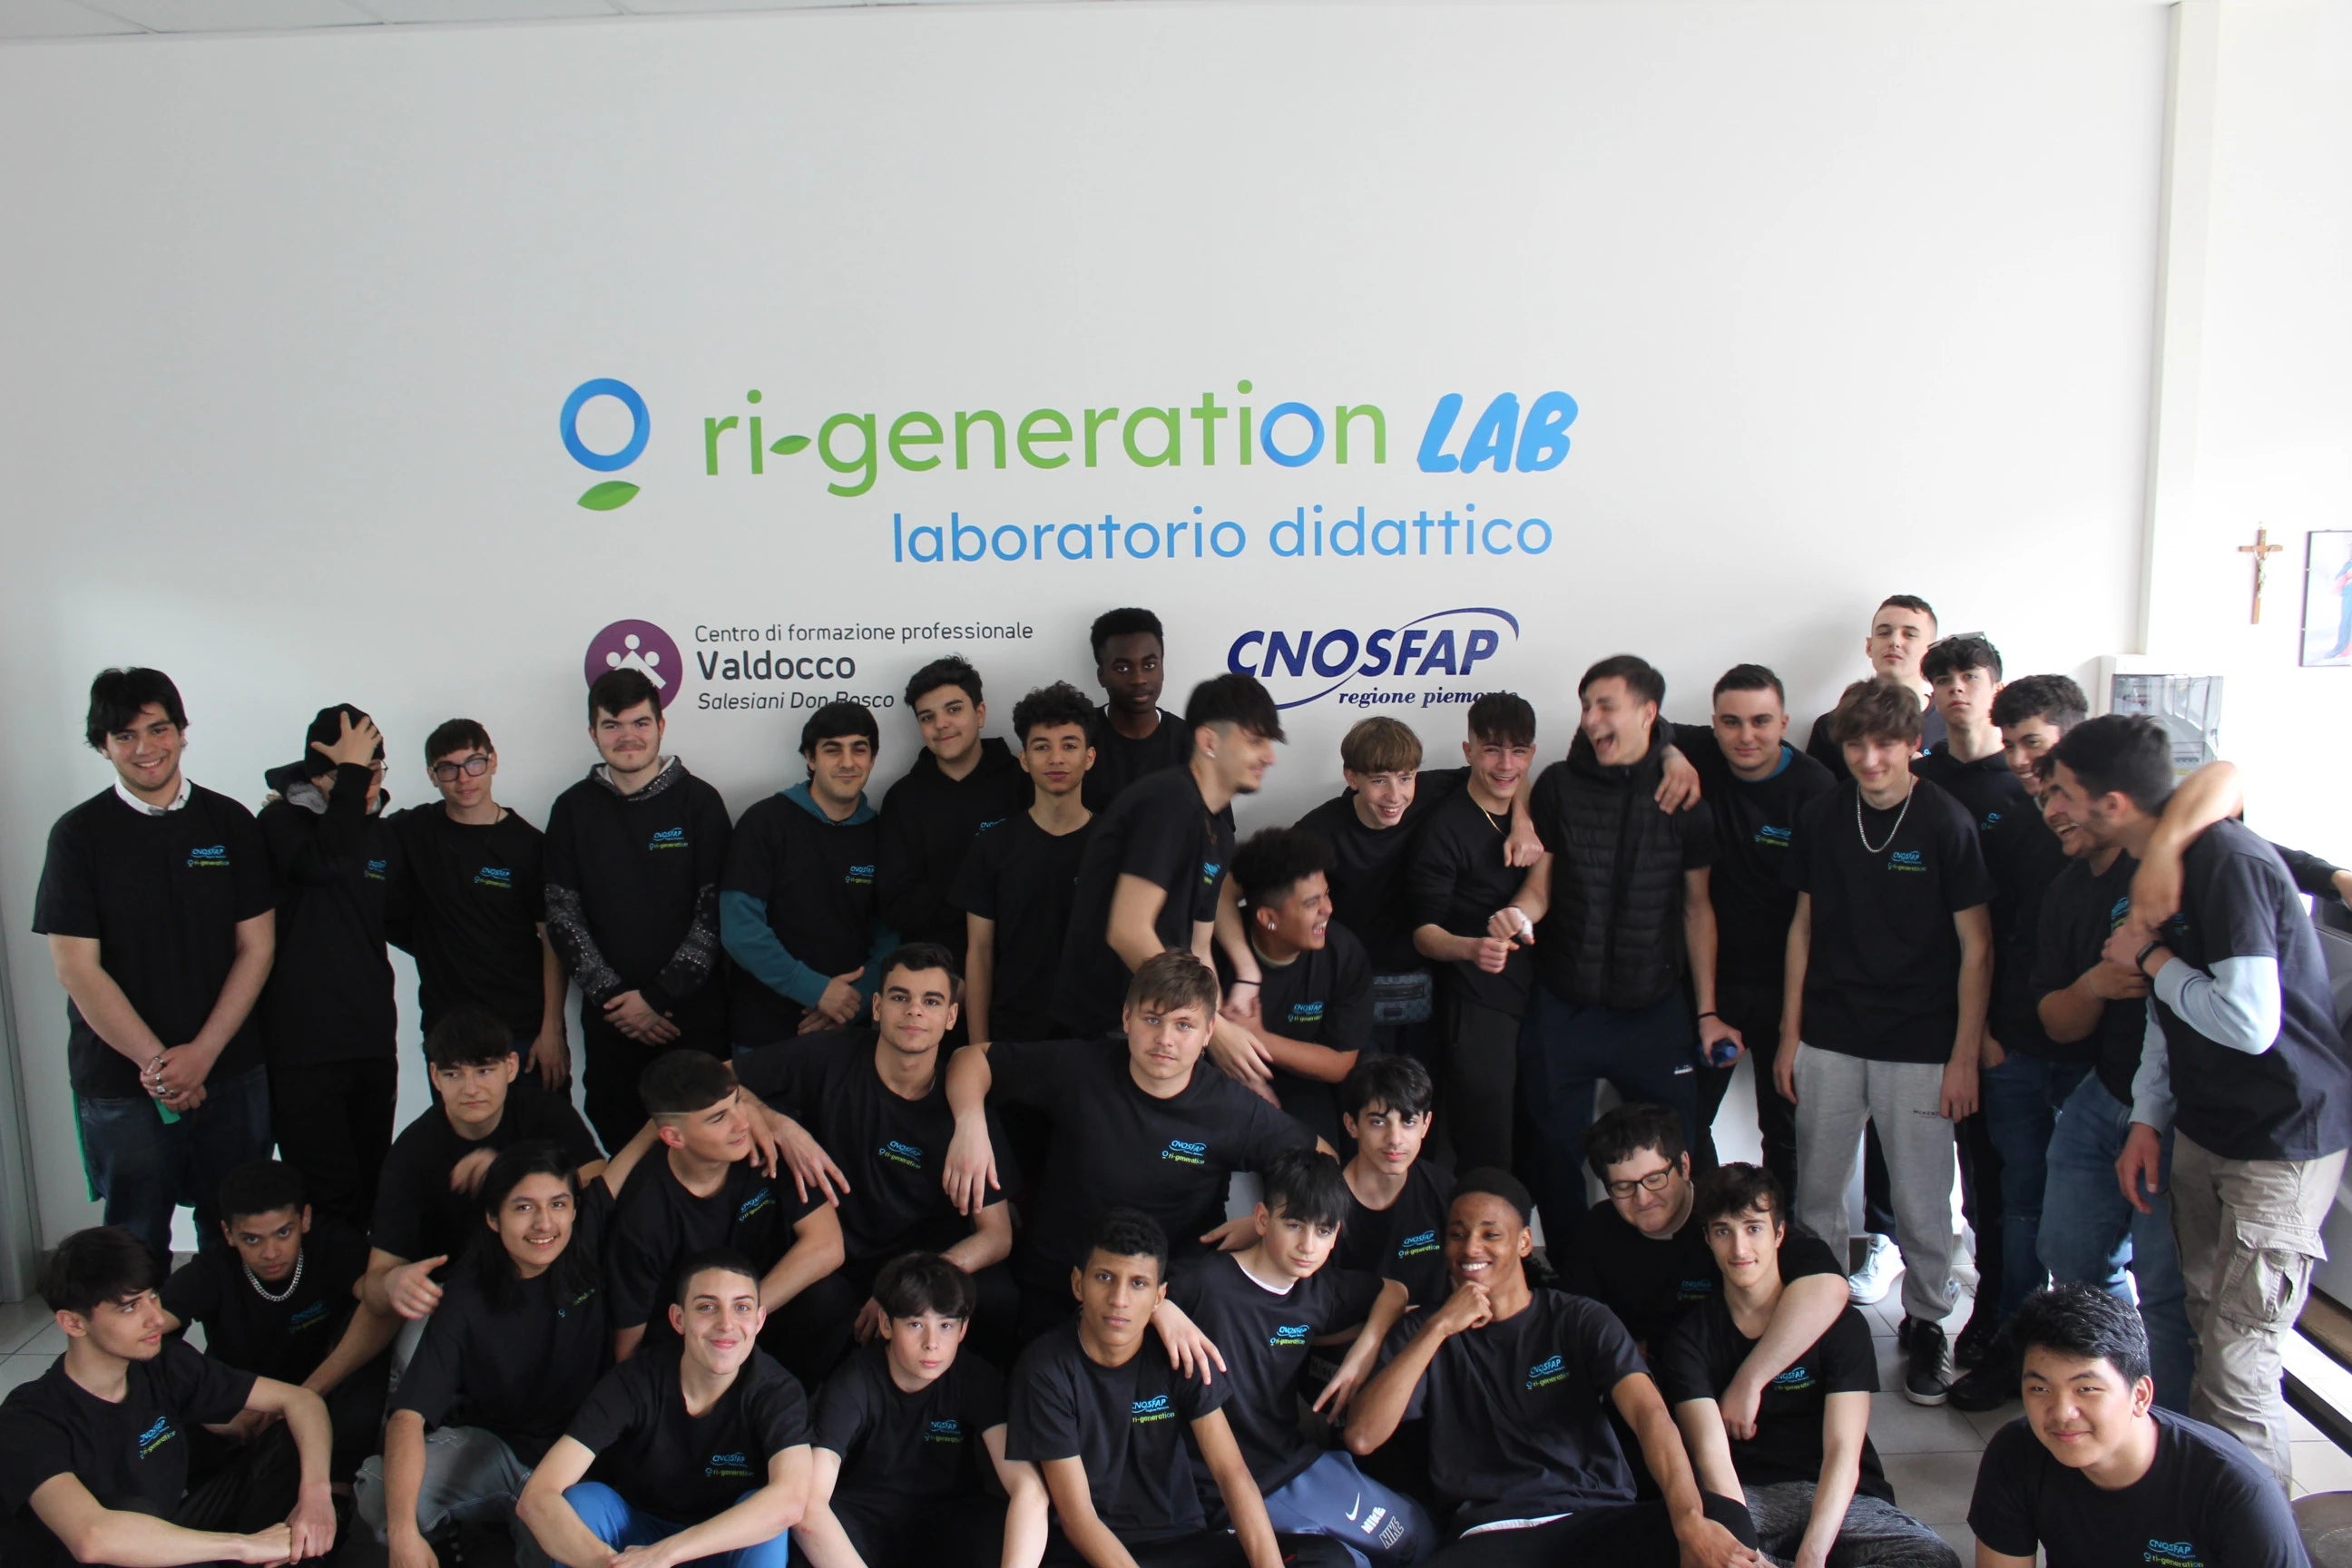 ri-generation e Cnosfap Valdocco uniti con il nuovo laboratorio di rigenerazione elettrodomestici